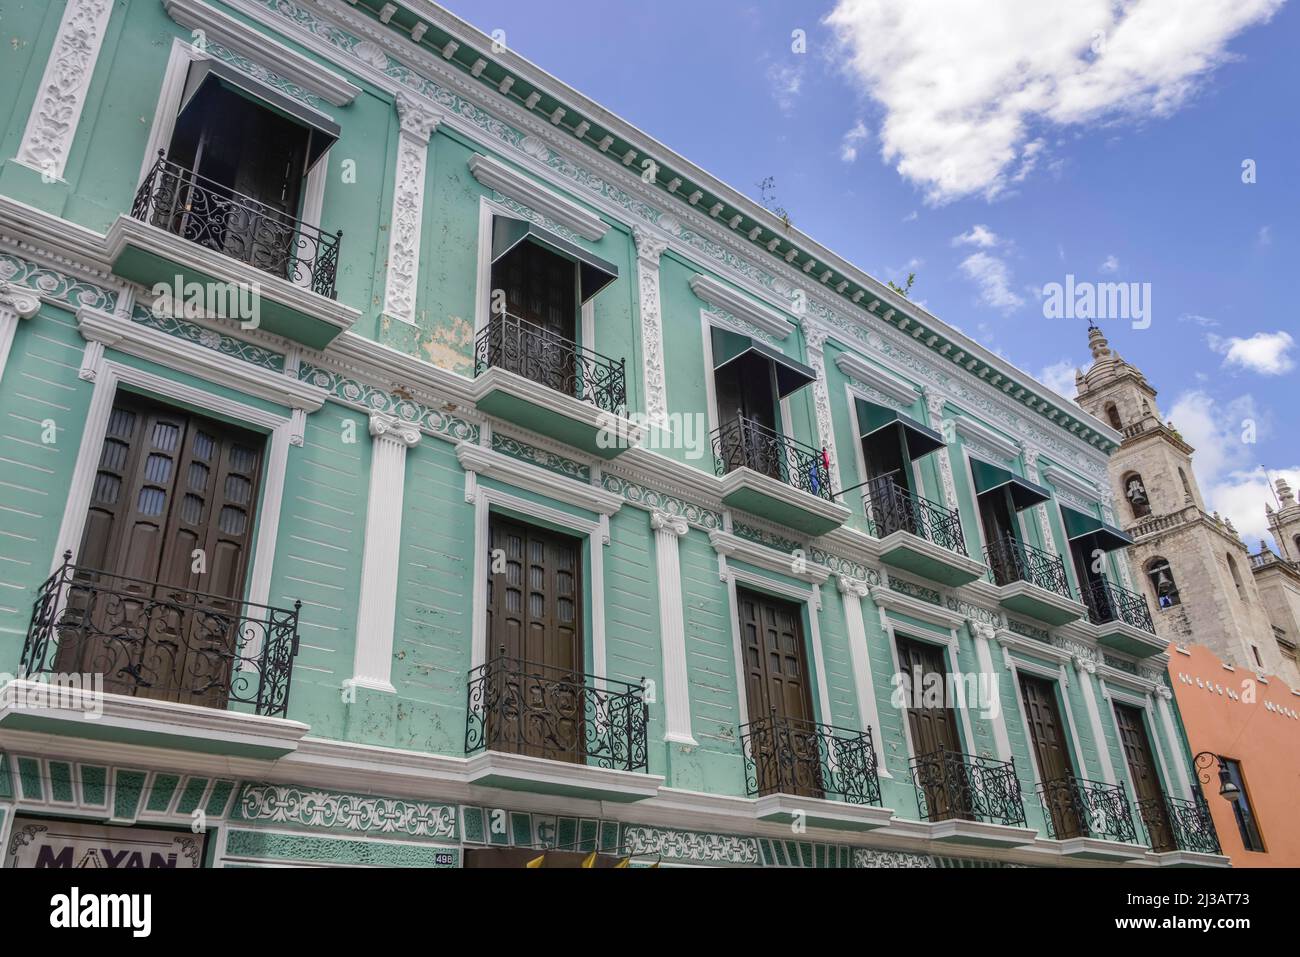 Ancien bâtiment, vieille ville, Merida, Yucatan, Mexique Banque D'Images